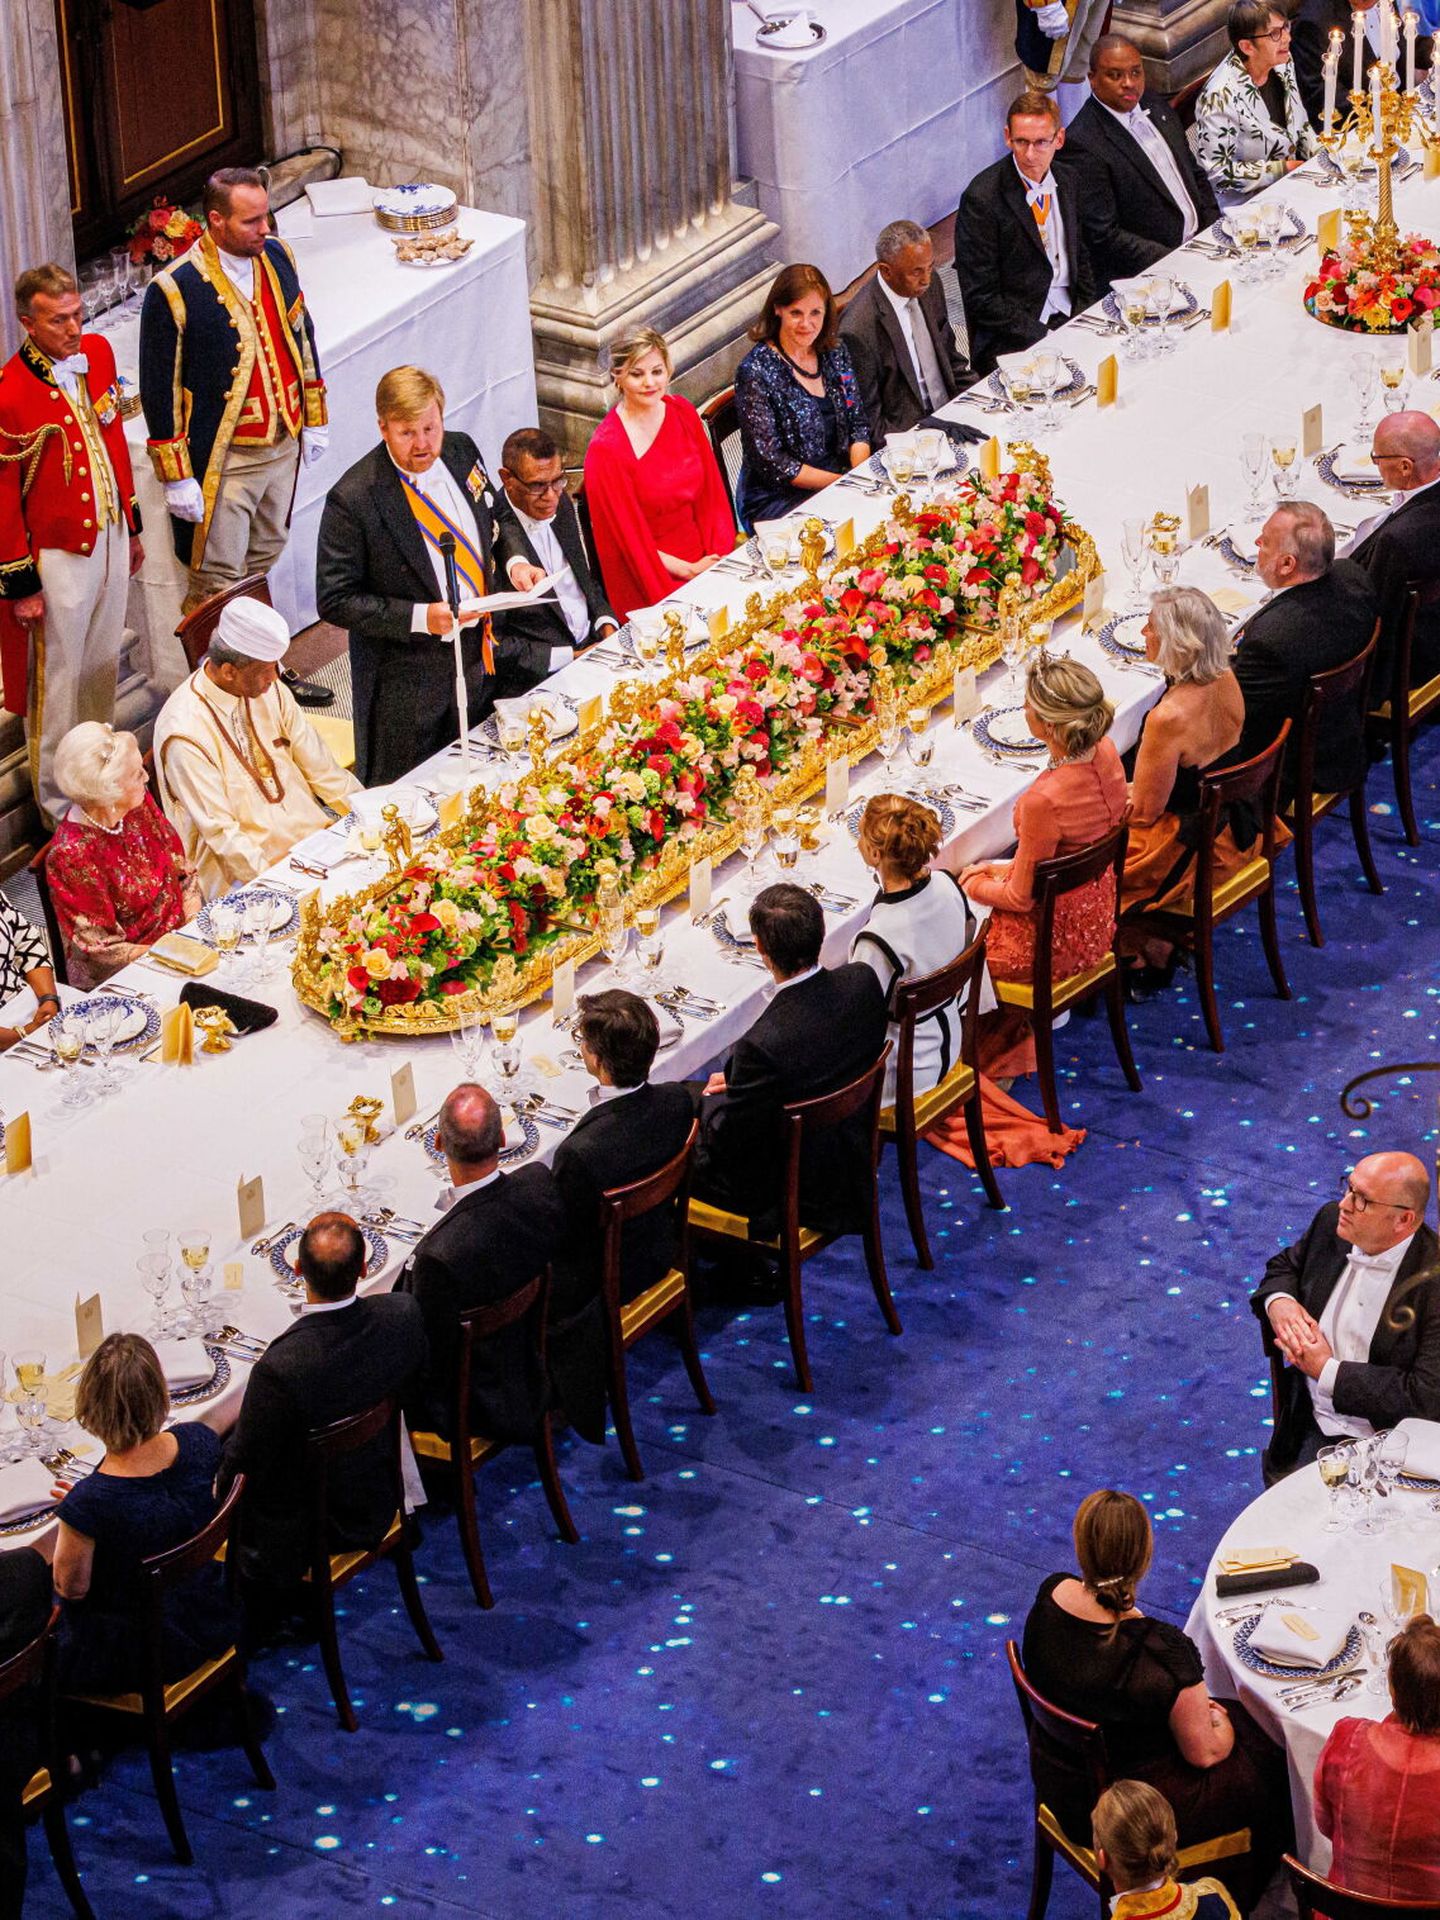 El rey Guillermo Alejandro ofrece un discurso en la cena de gala con el Cuerpo Diplomático. (EFE/Van Katwijk)